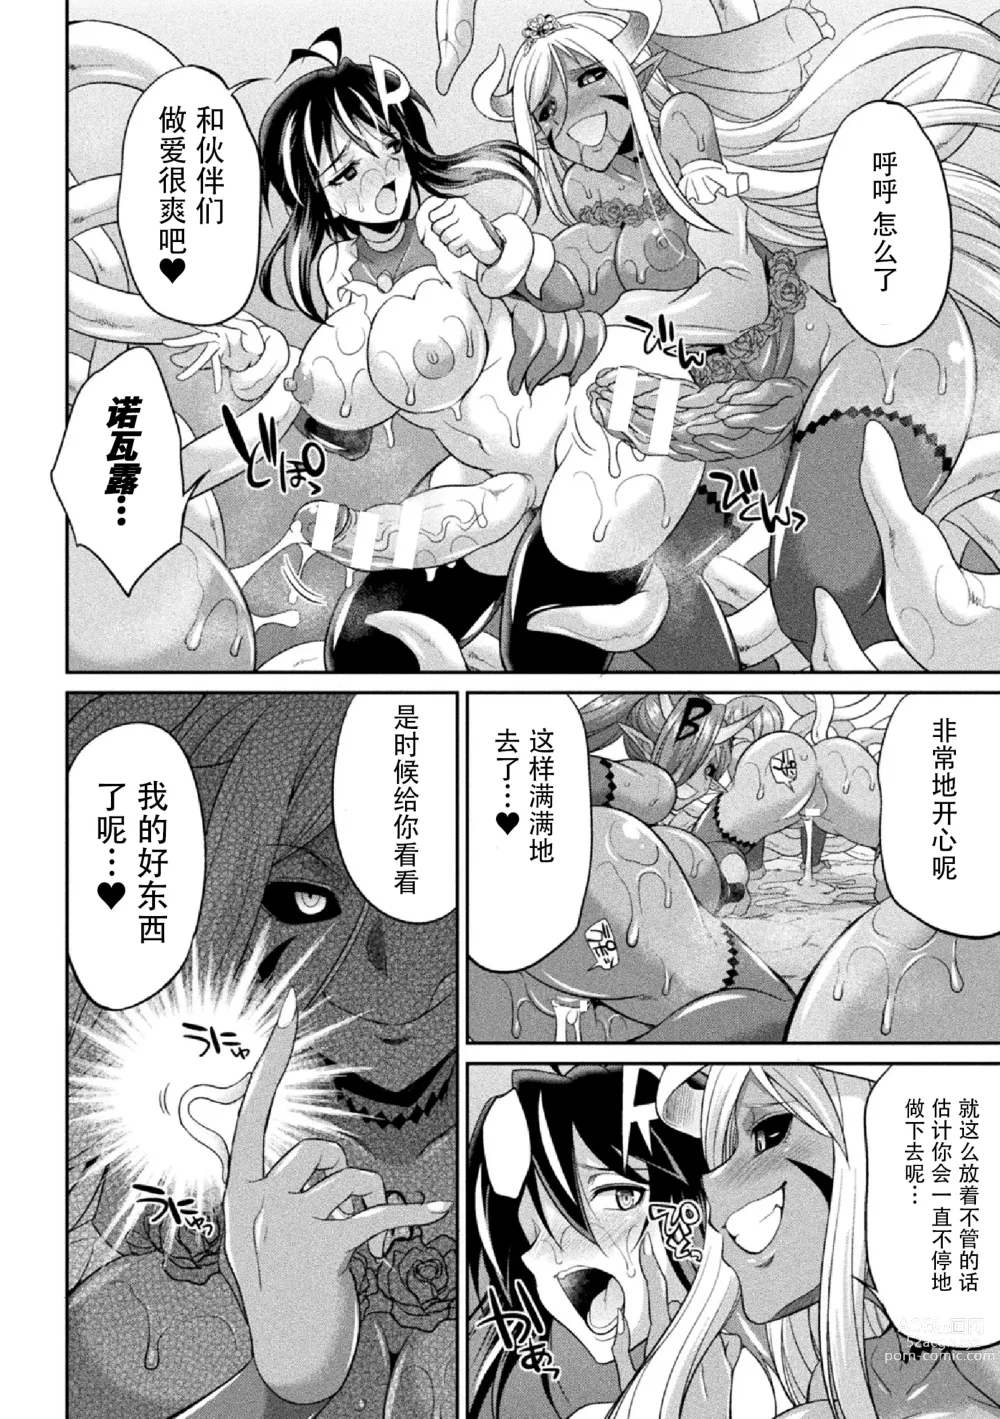 Page 150 of manga Tokumu Sentai Colorful Force Seigi no Heroine vs Shokushu Joou! Futanari Choukyou Daikessen!?